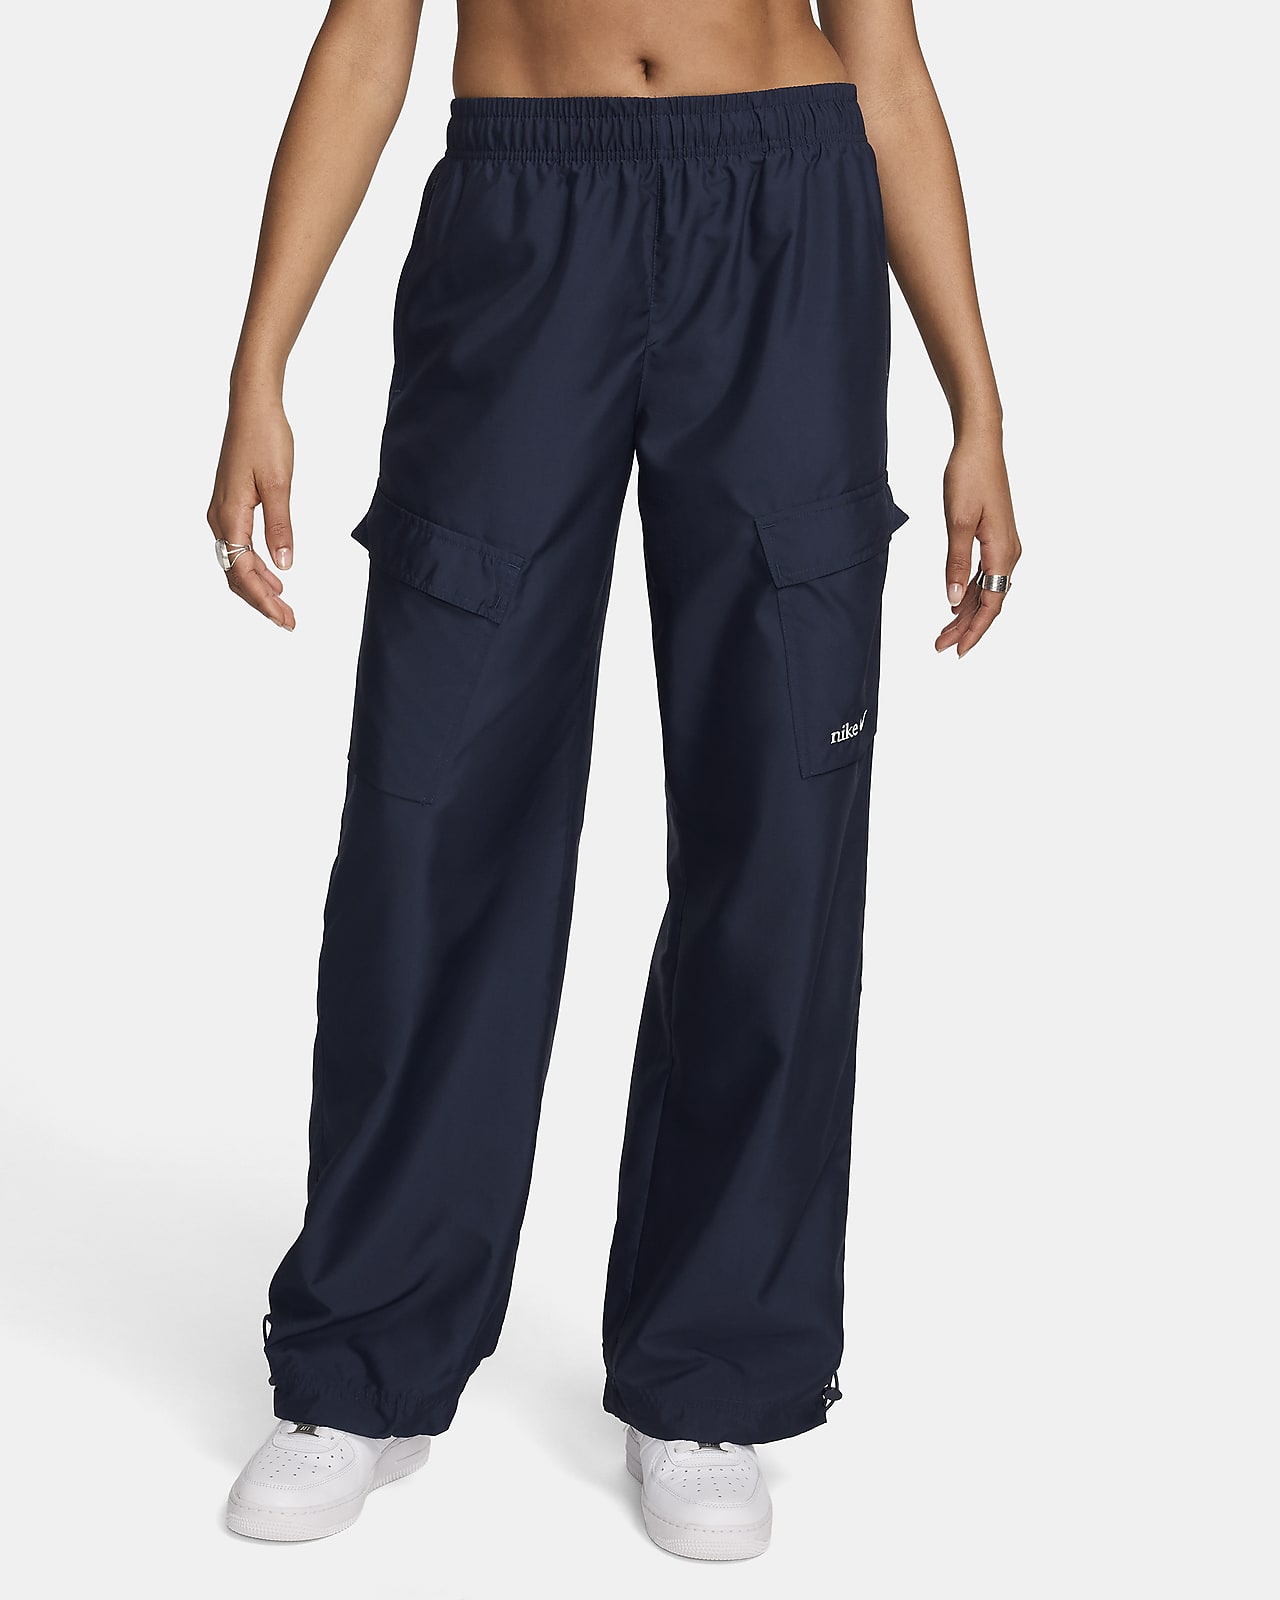 Nike Sportswear Women's Woven Cargo Trousers. Nike CH